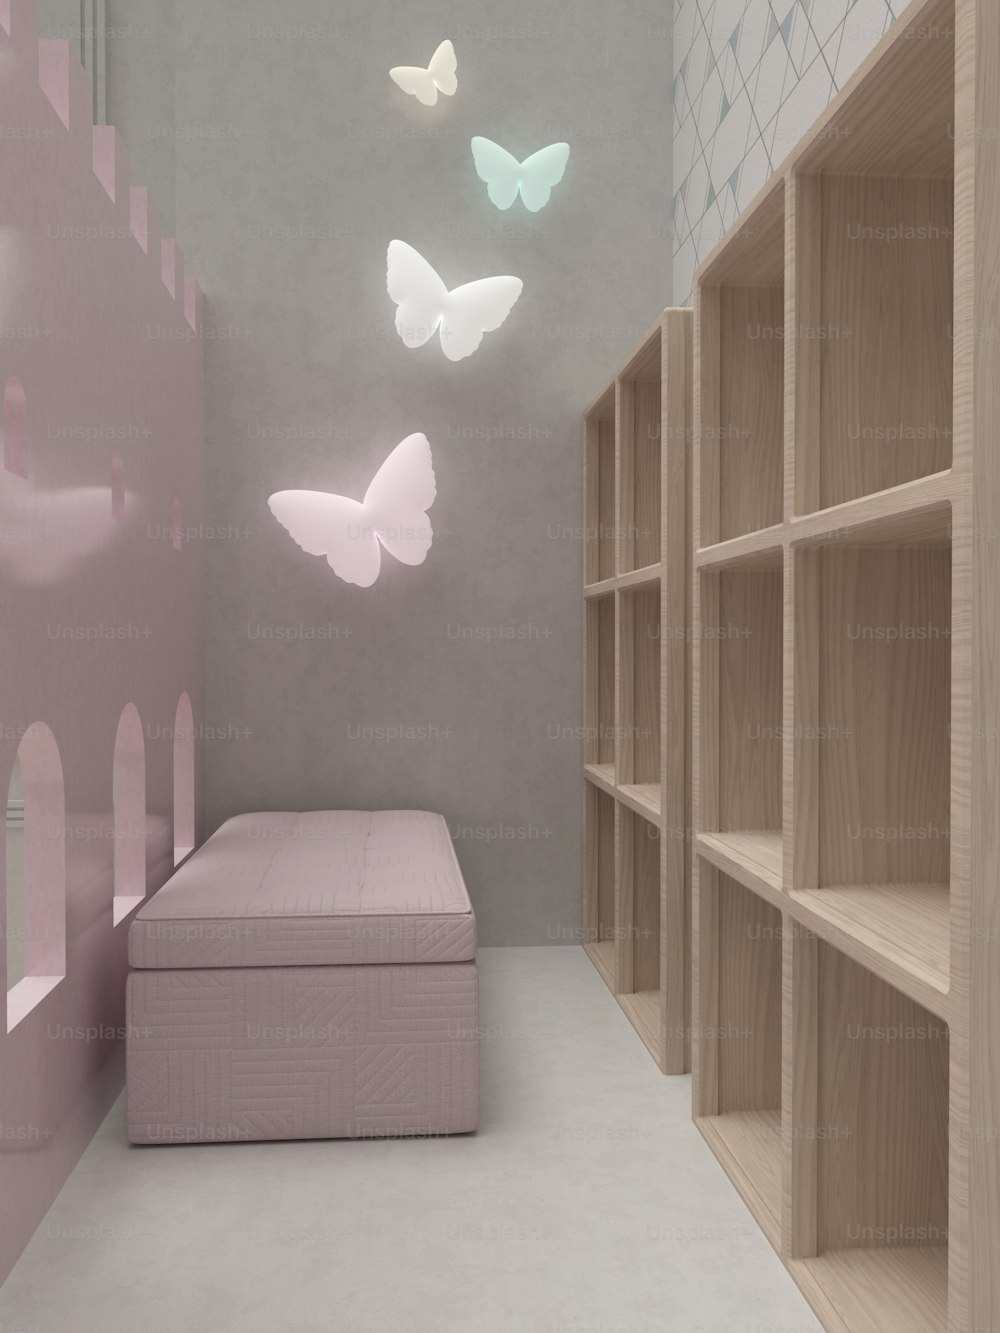 una stanza con un letto, scaffali e farfalle sul muro